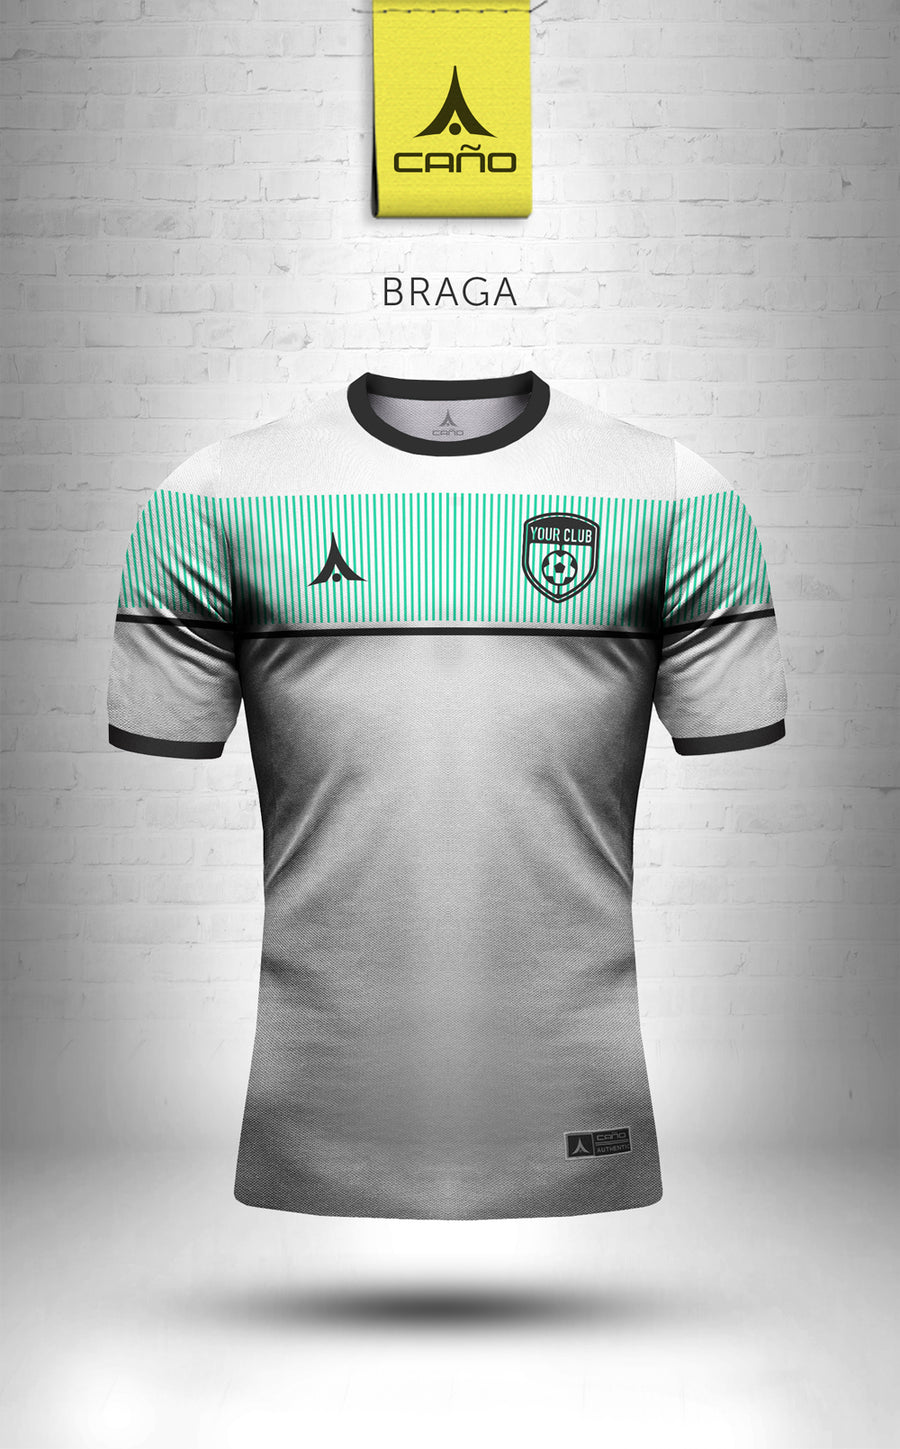 Braga in white/alt